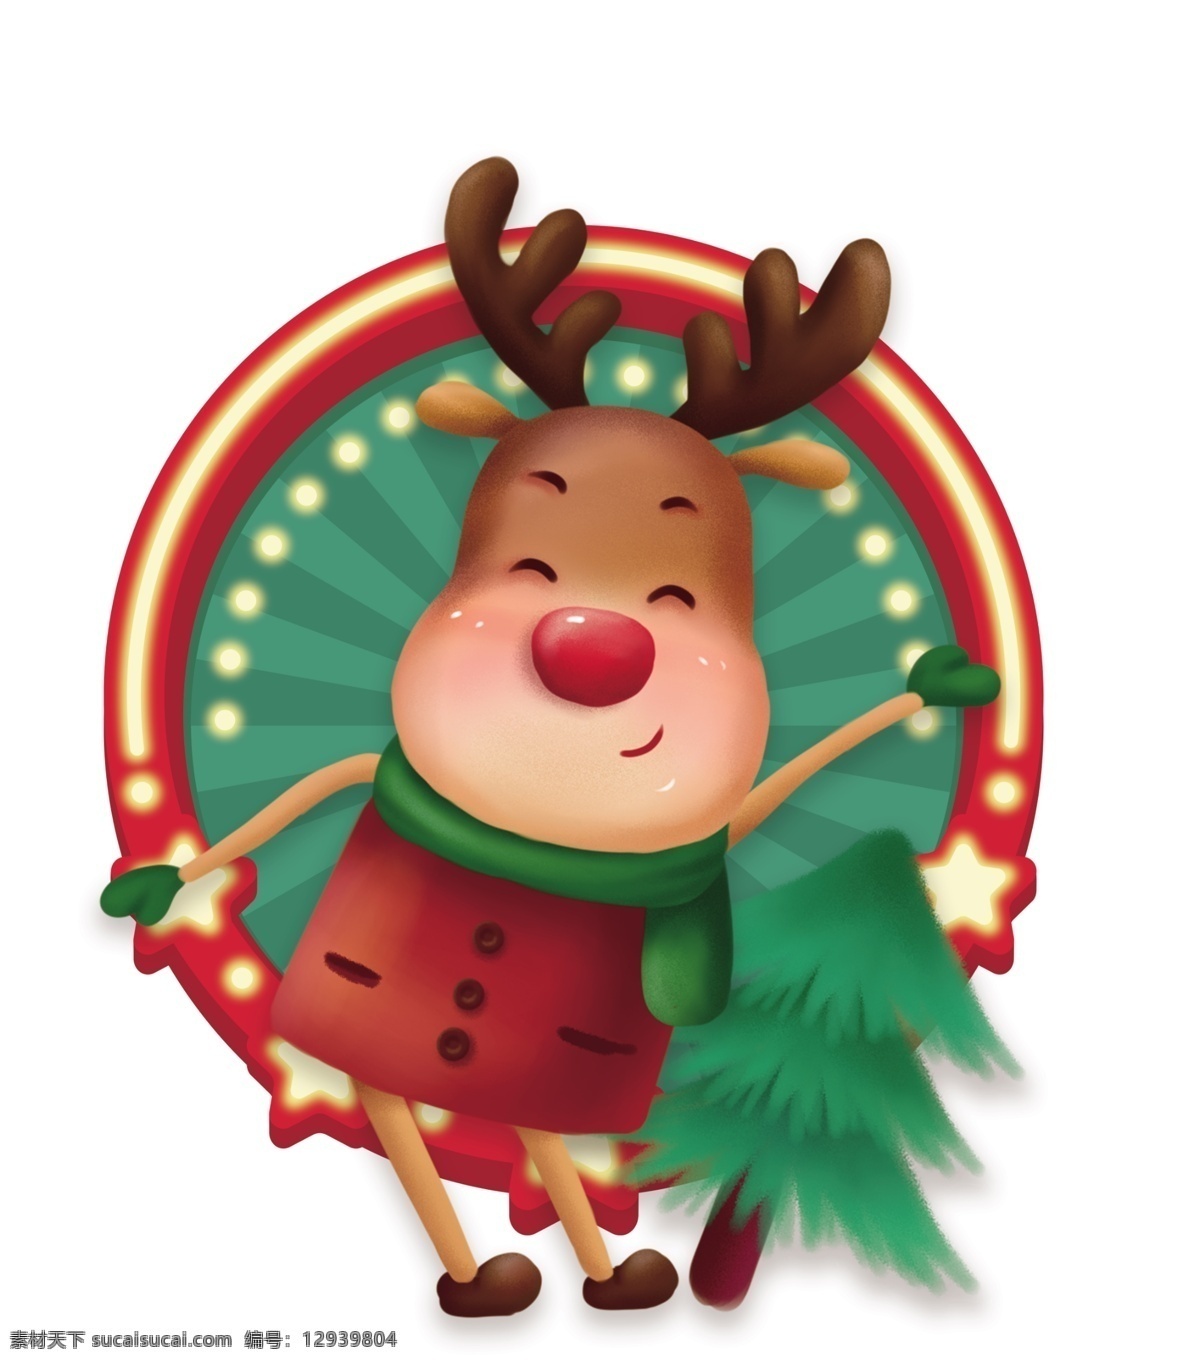 圣诞节 圣诞麋鹿图片 异型 圣诞 麋鹿 圣诞素材 动物 卡通麋鹿 设计广告设计 卡通设计